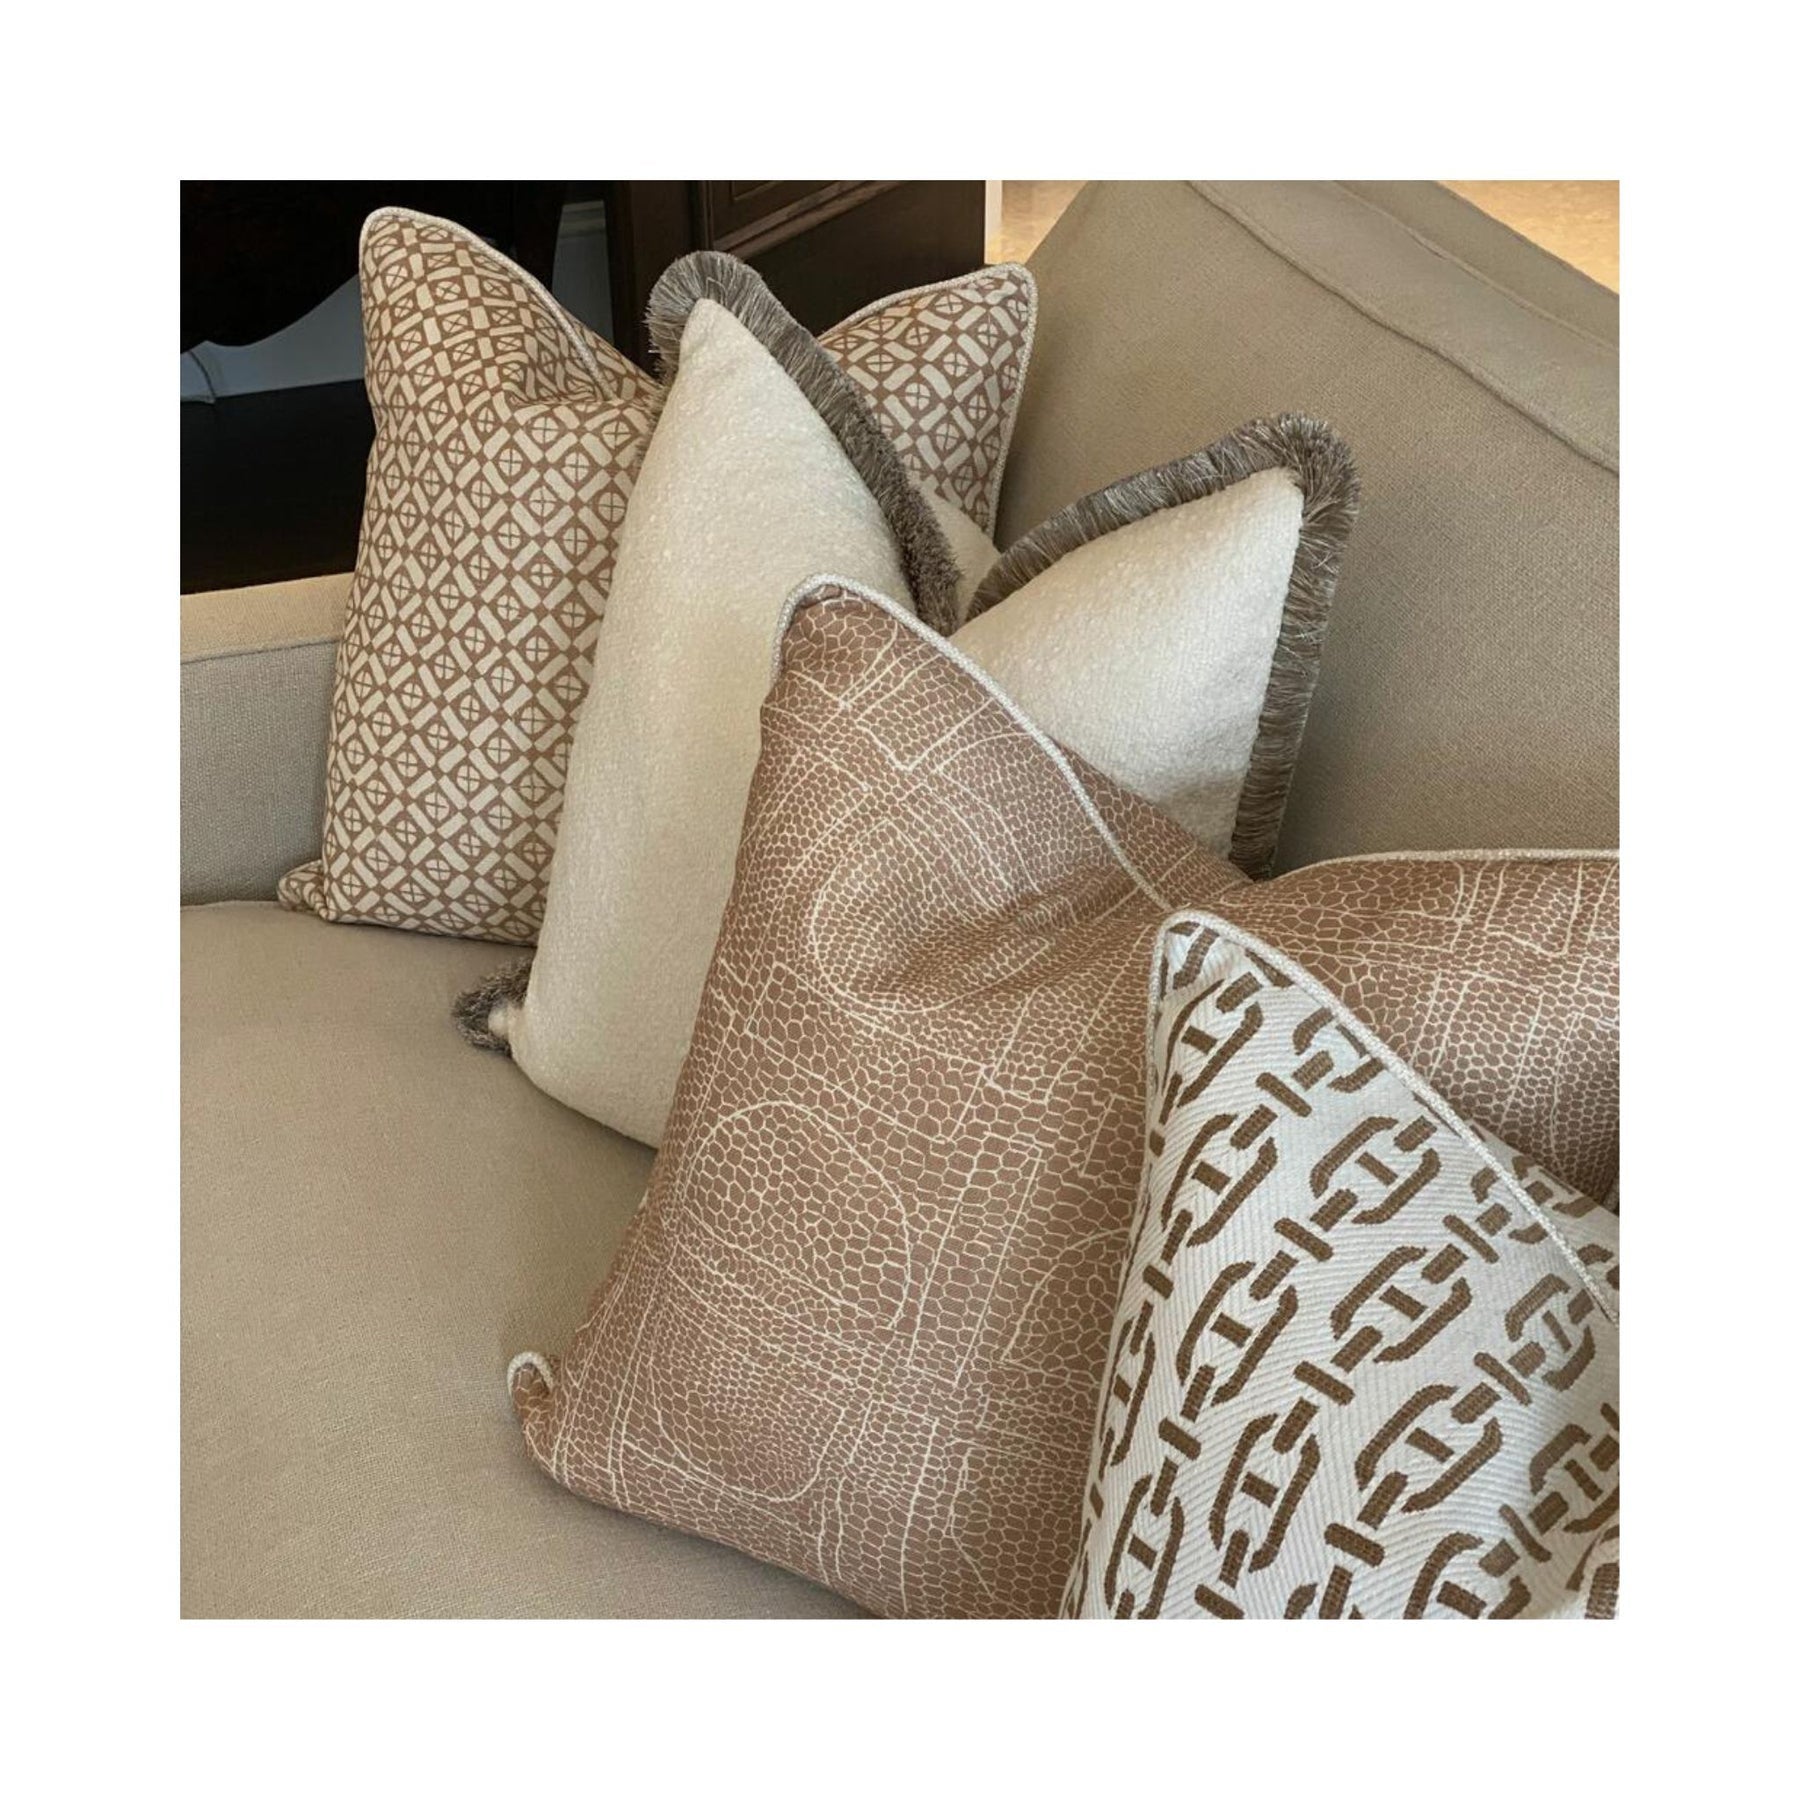 Luxury Cushions in brown tones